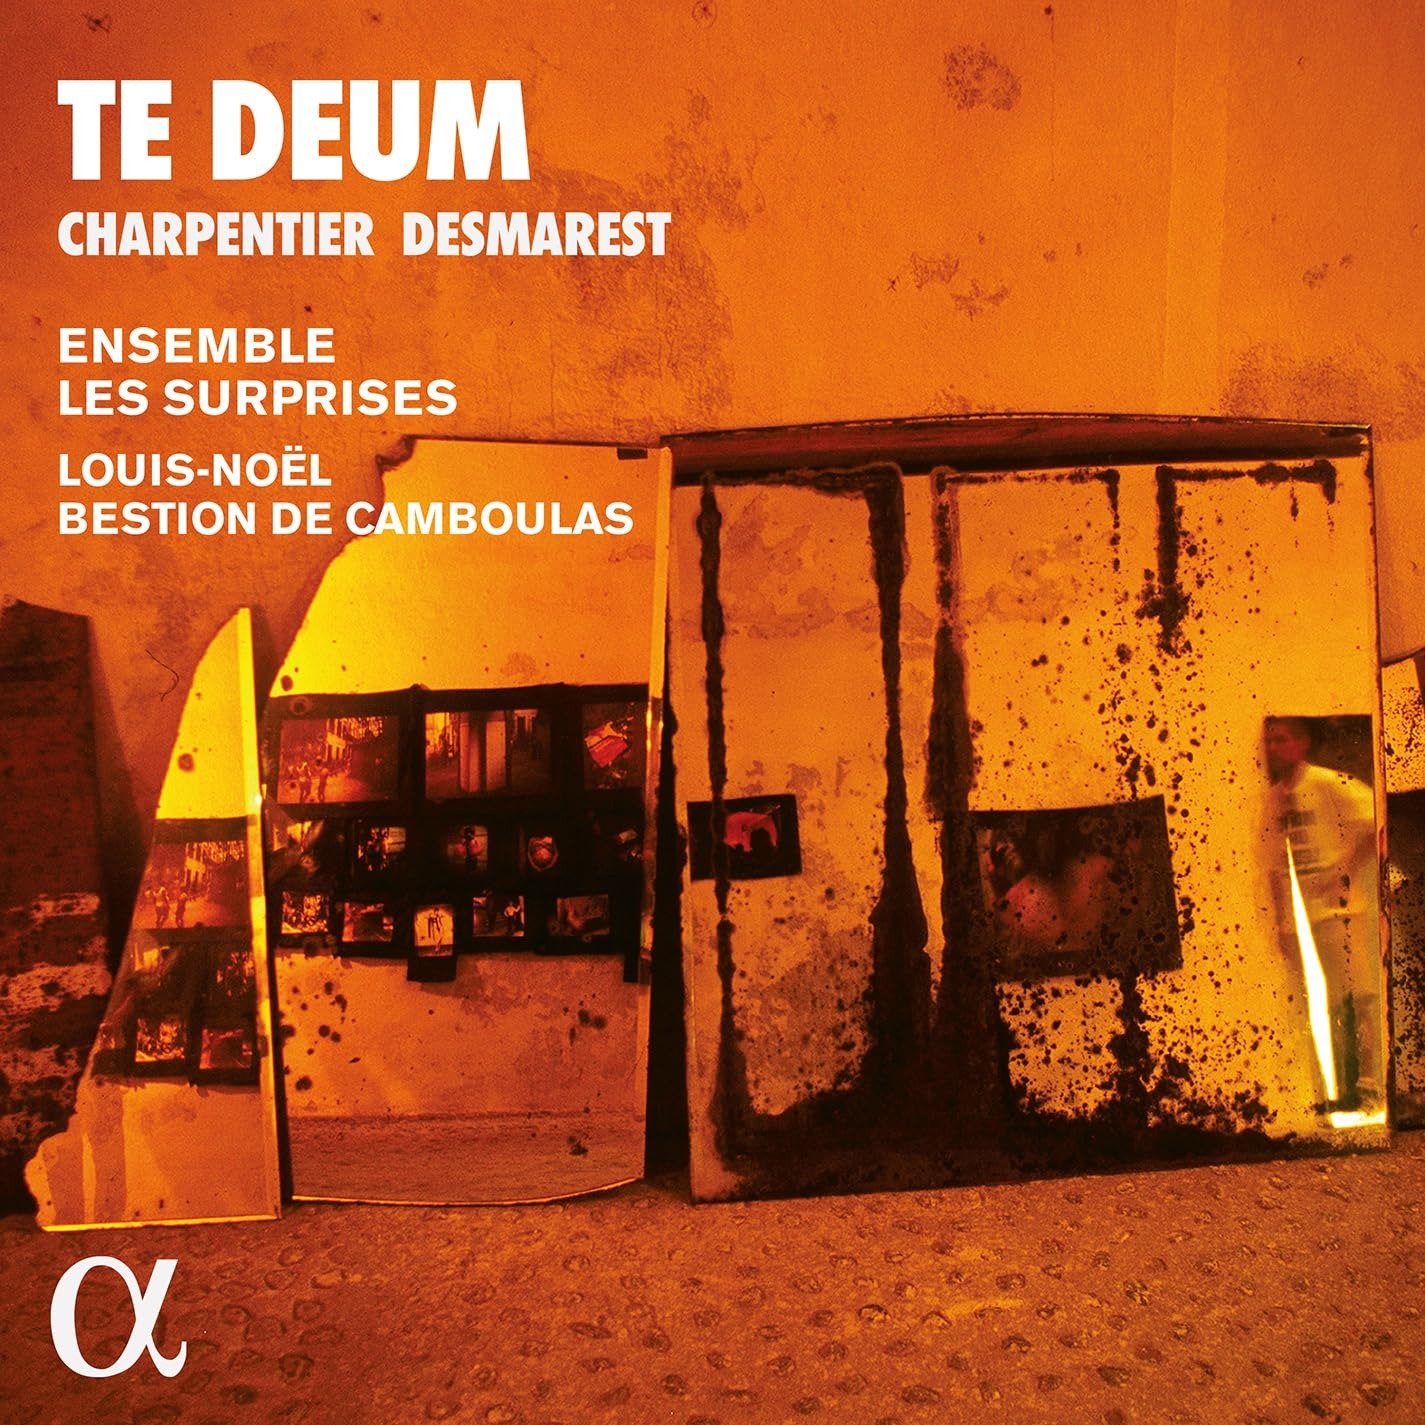 CD Shop - ENSEMBLE LES SURPRISES CHARPENTIER & DESMAREST: TE DEUM